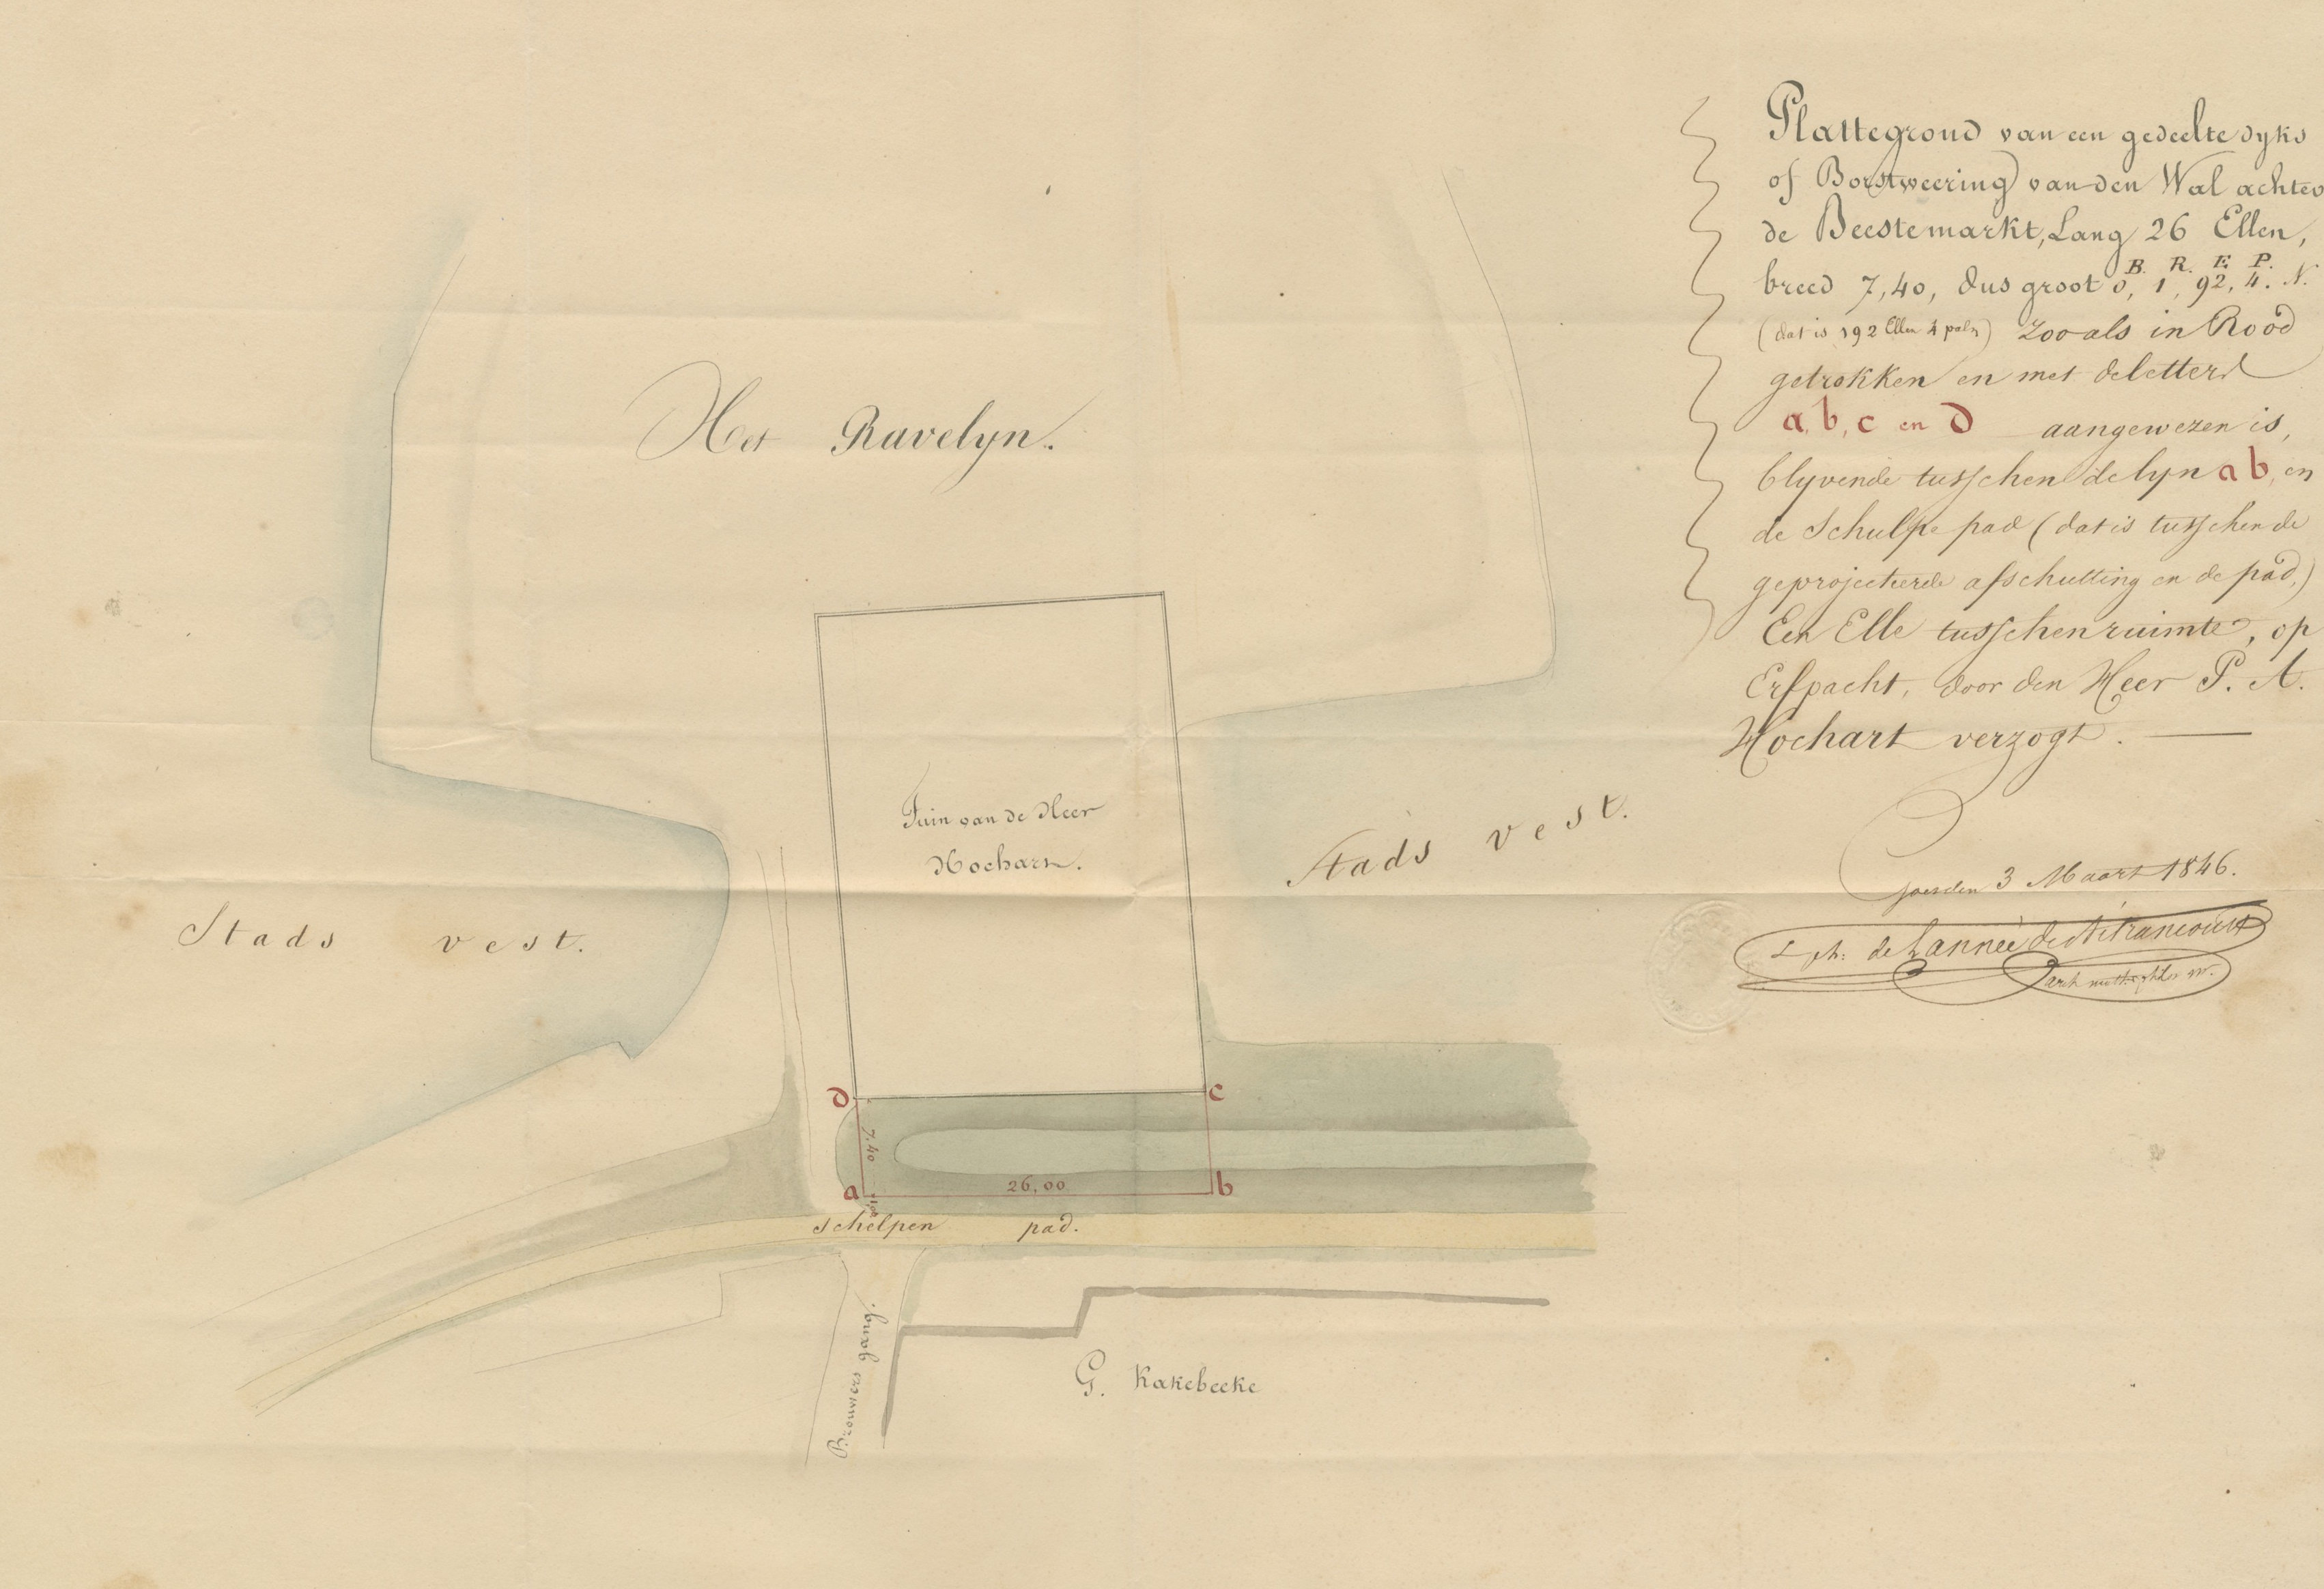 Tekening van een perceel stadswal bij de Brouwersgang, in erfpacht te nemen door P.A. Hochart, 1846. GAG.ASG.inv.nr. 592.1, nr. 270.